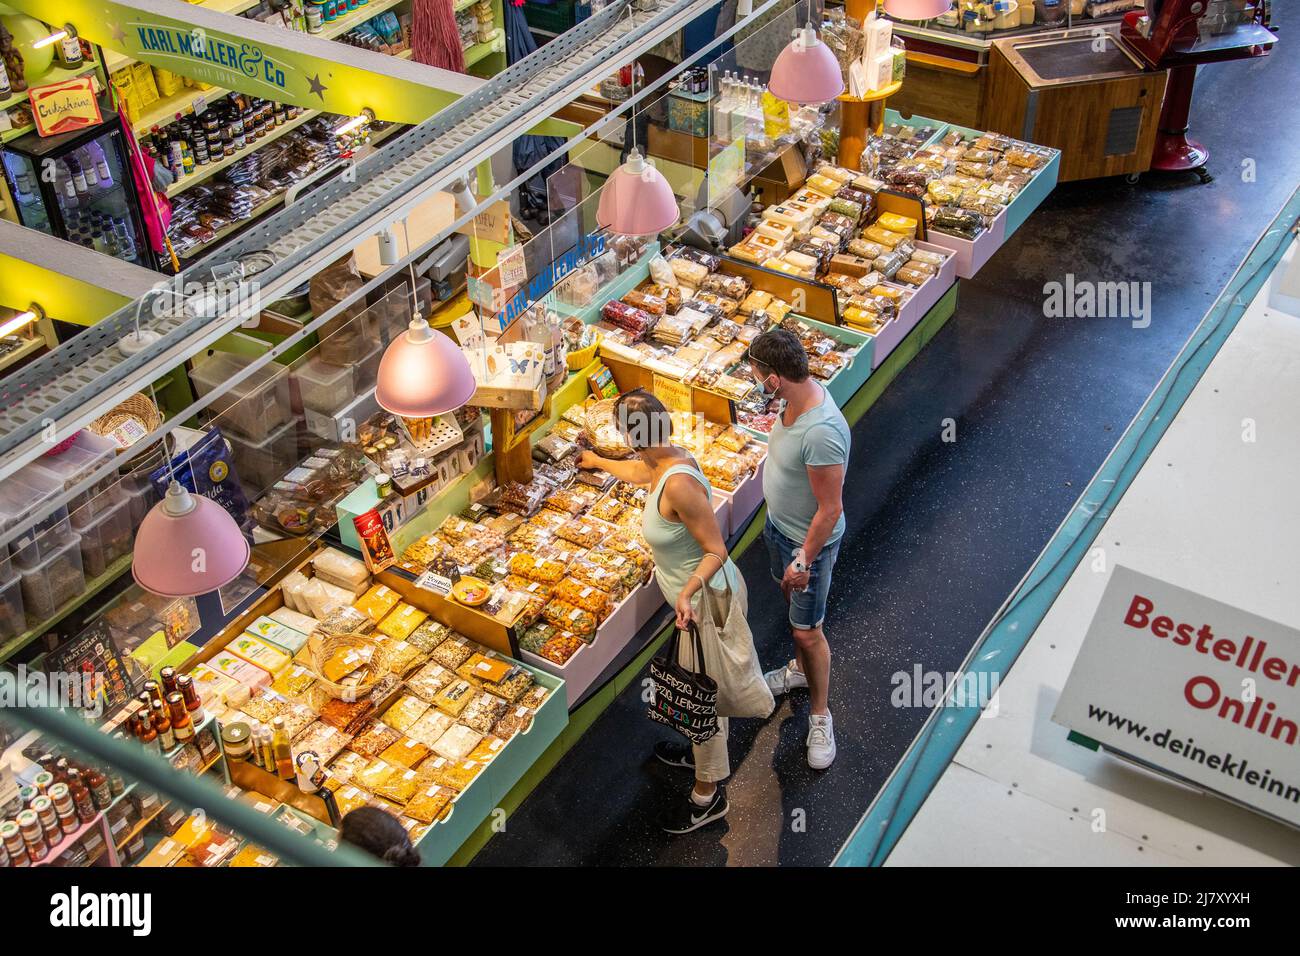 Compra de frutos secos en Kleinmarkthalle, mercado interior, Frankfurt, Alemania Foto de stock